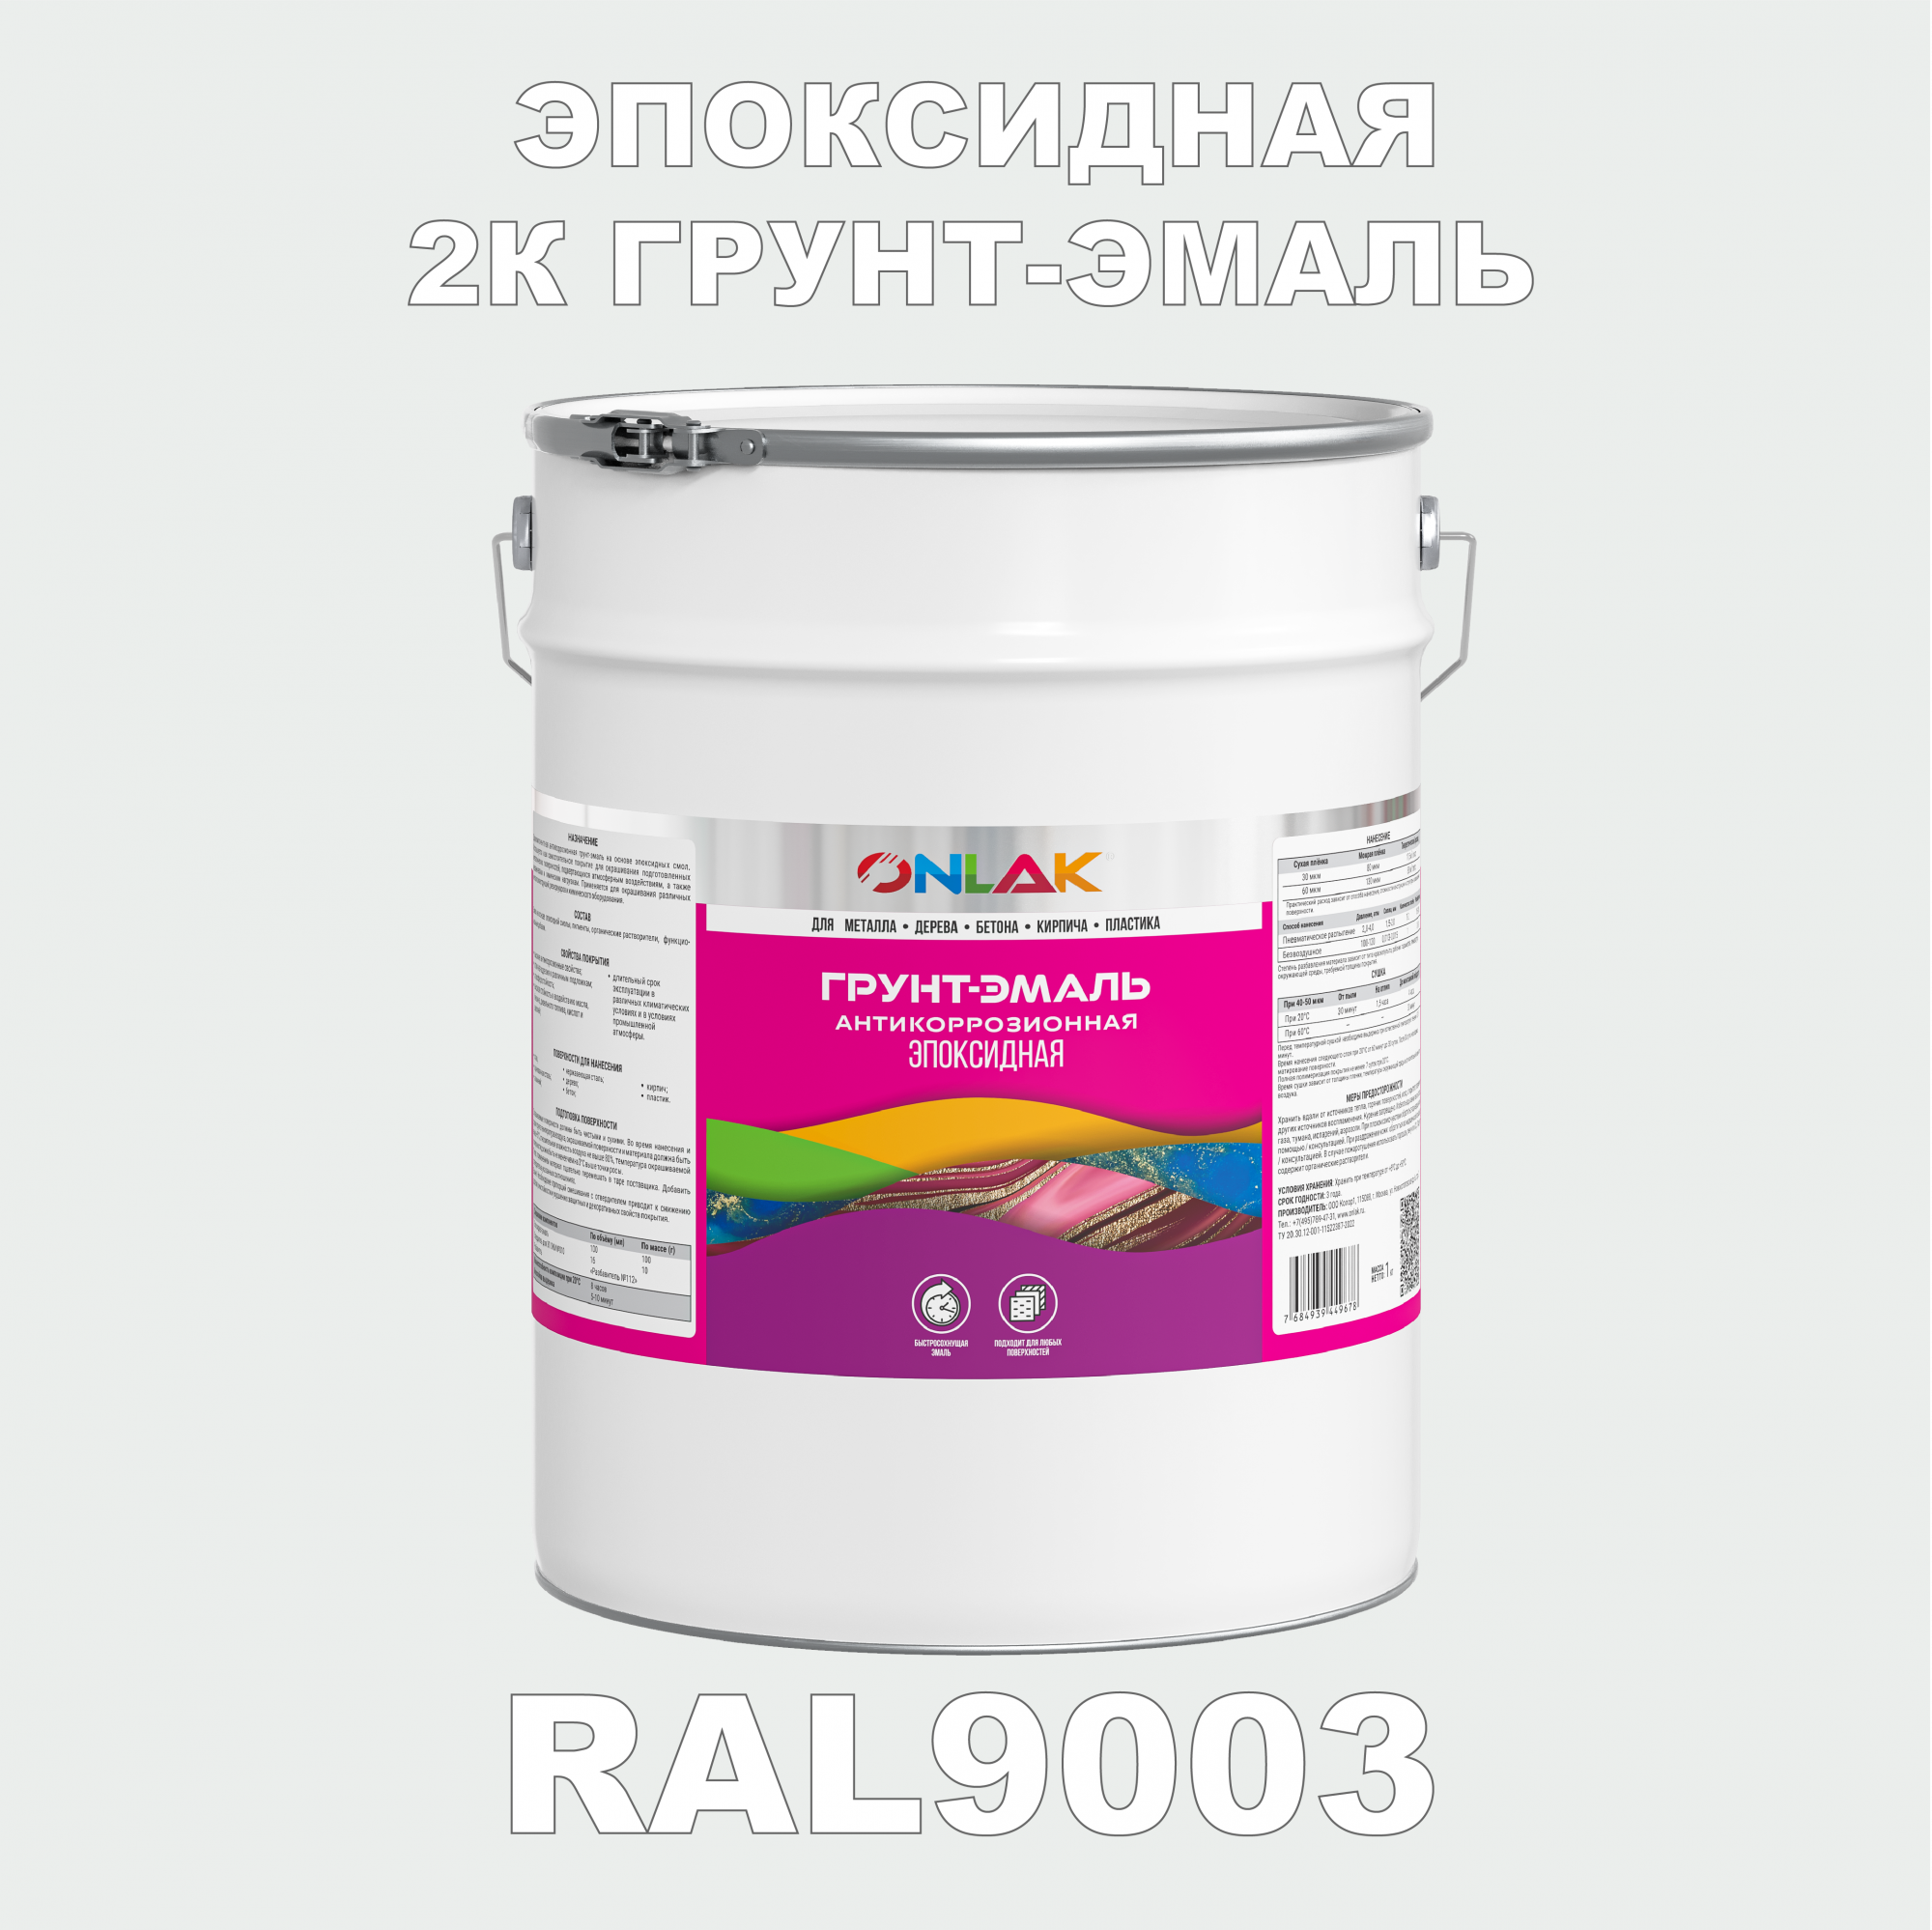 Грунт-эмаль ONLAK Эпоксидная 2К RAL9003 по металлу, ржавчине, дереву, бетону